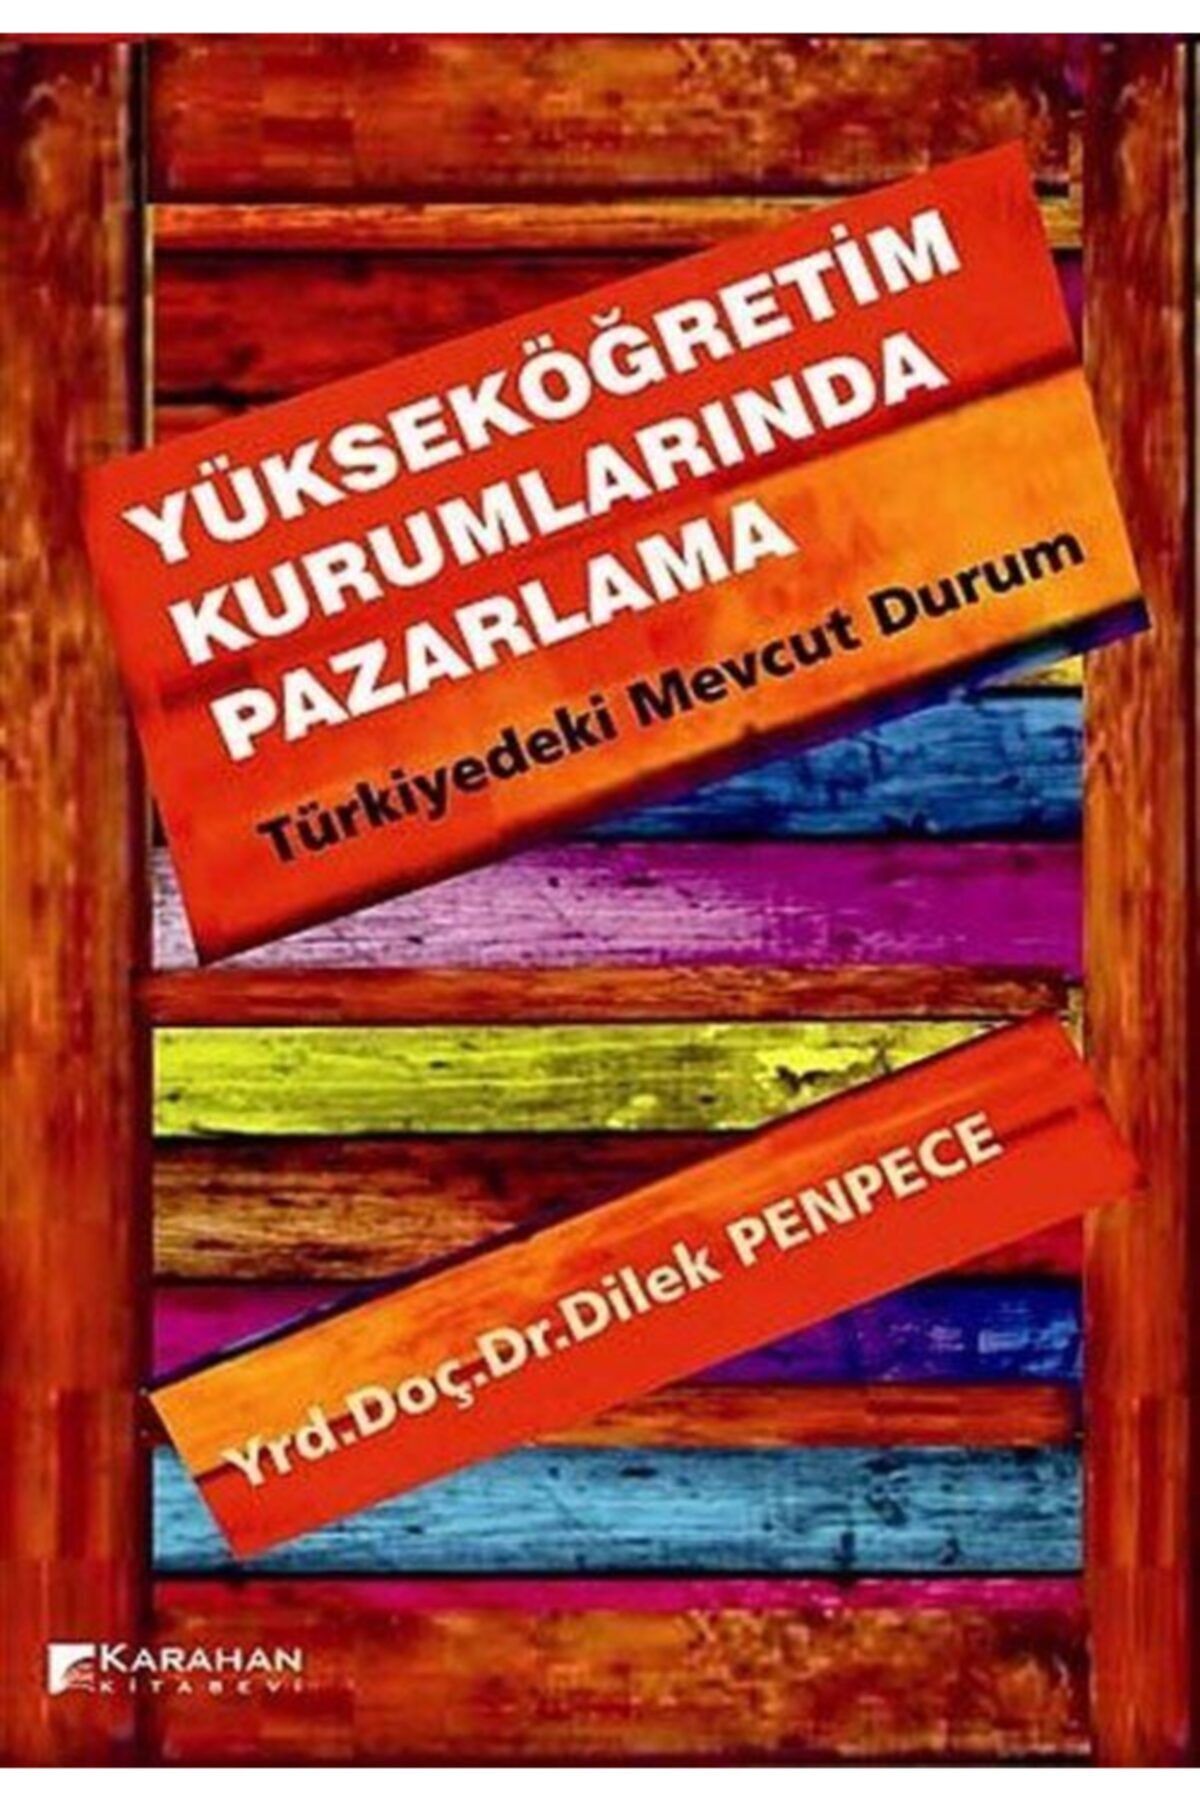 Karahan Kitabevi Yükseköğretim Kurumlarında Pazarlama - Türkiyedeki Mevcut Durum - Dilek Penpece